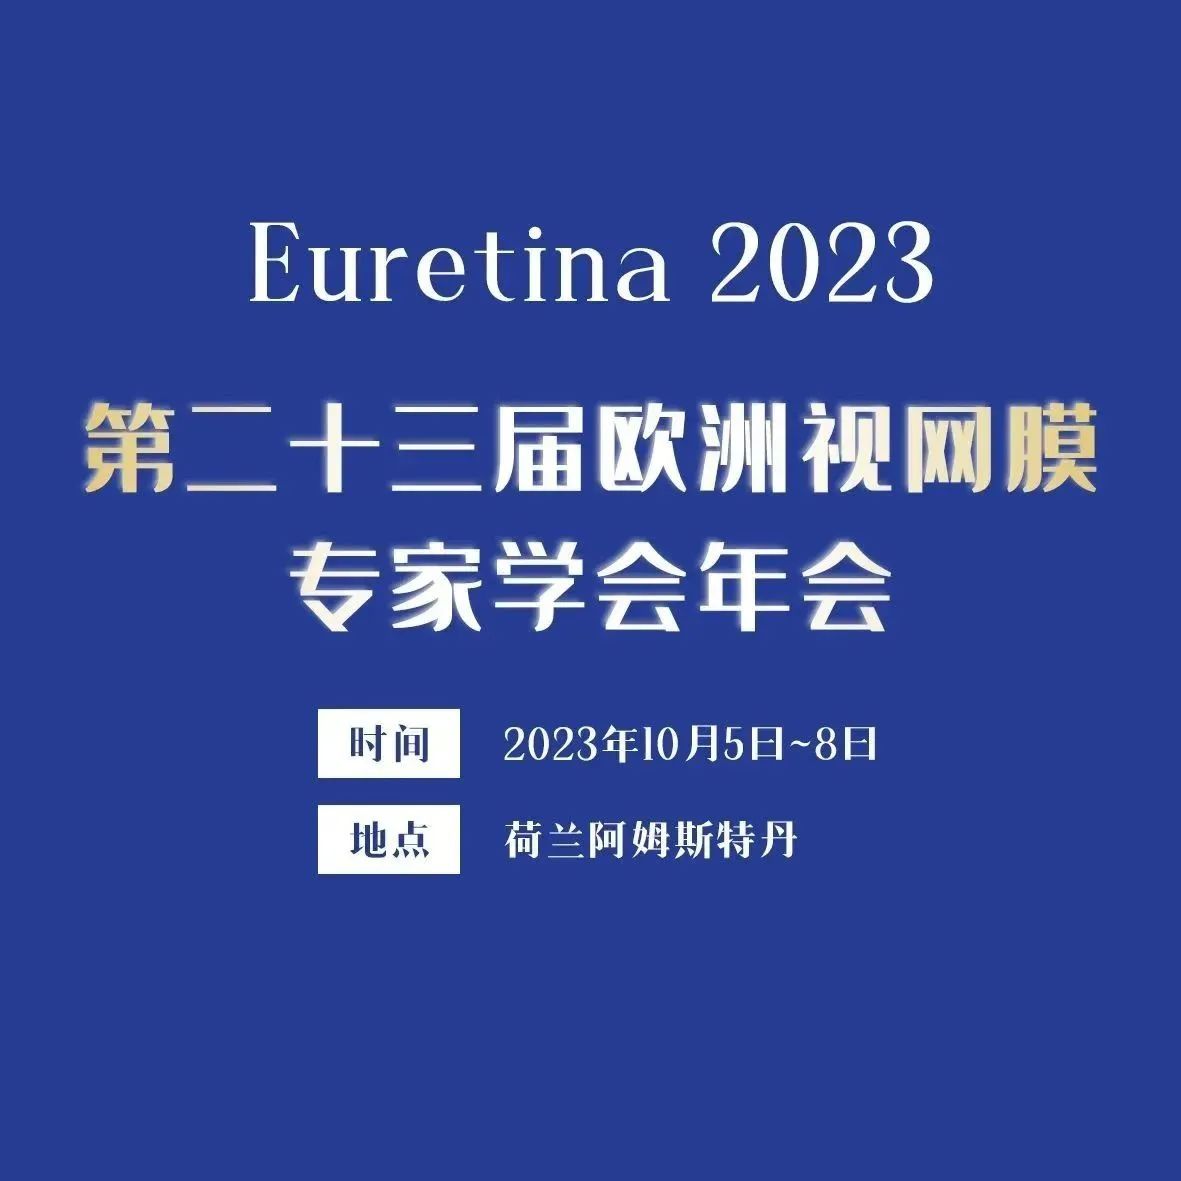 Euretina 2023盛视绽放，中国之声将带来哪些惊喜？